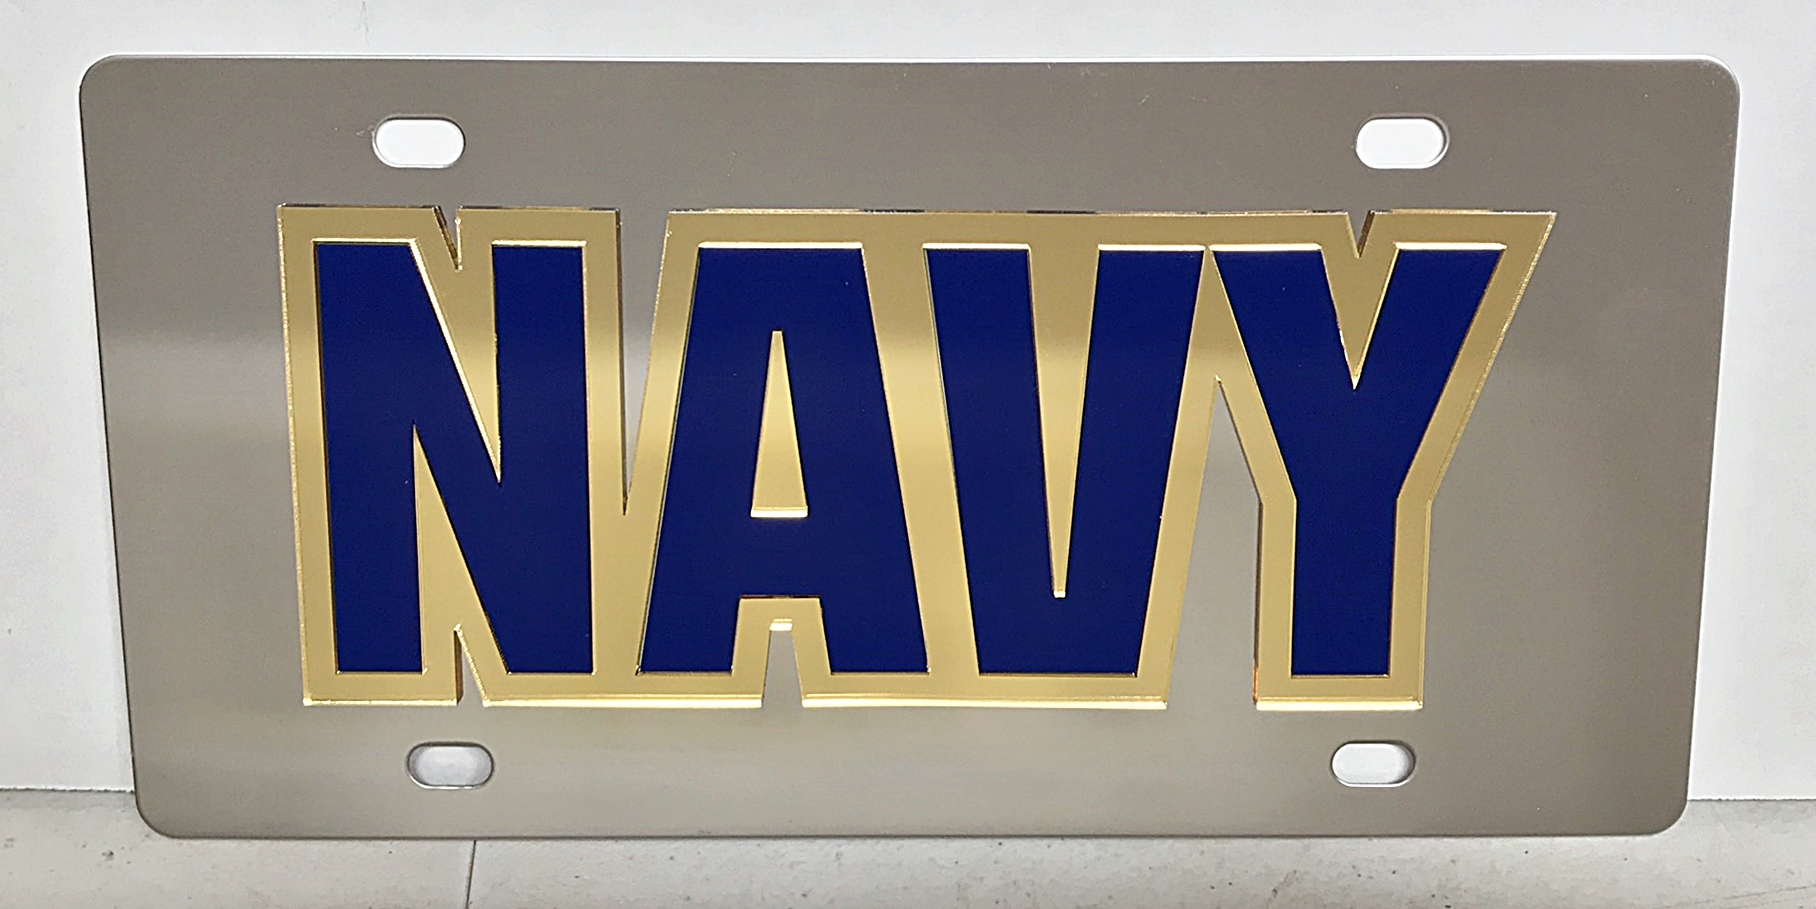 US Navy vanity mirror license plate car tag